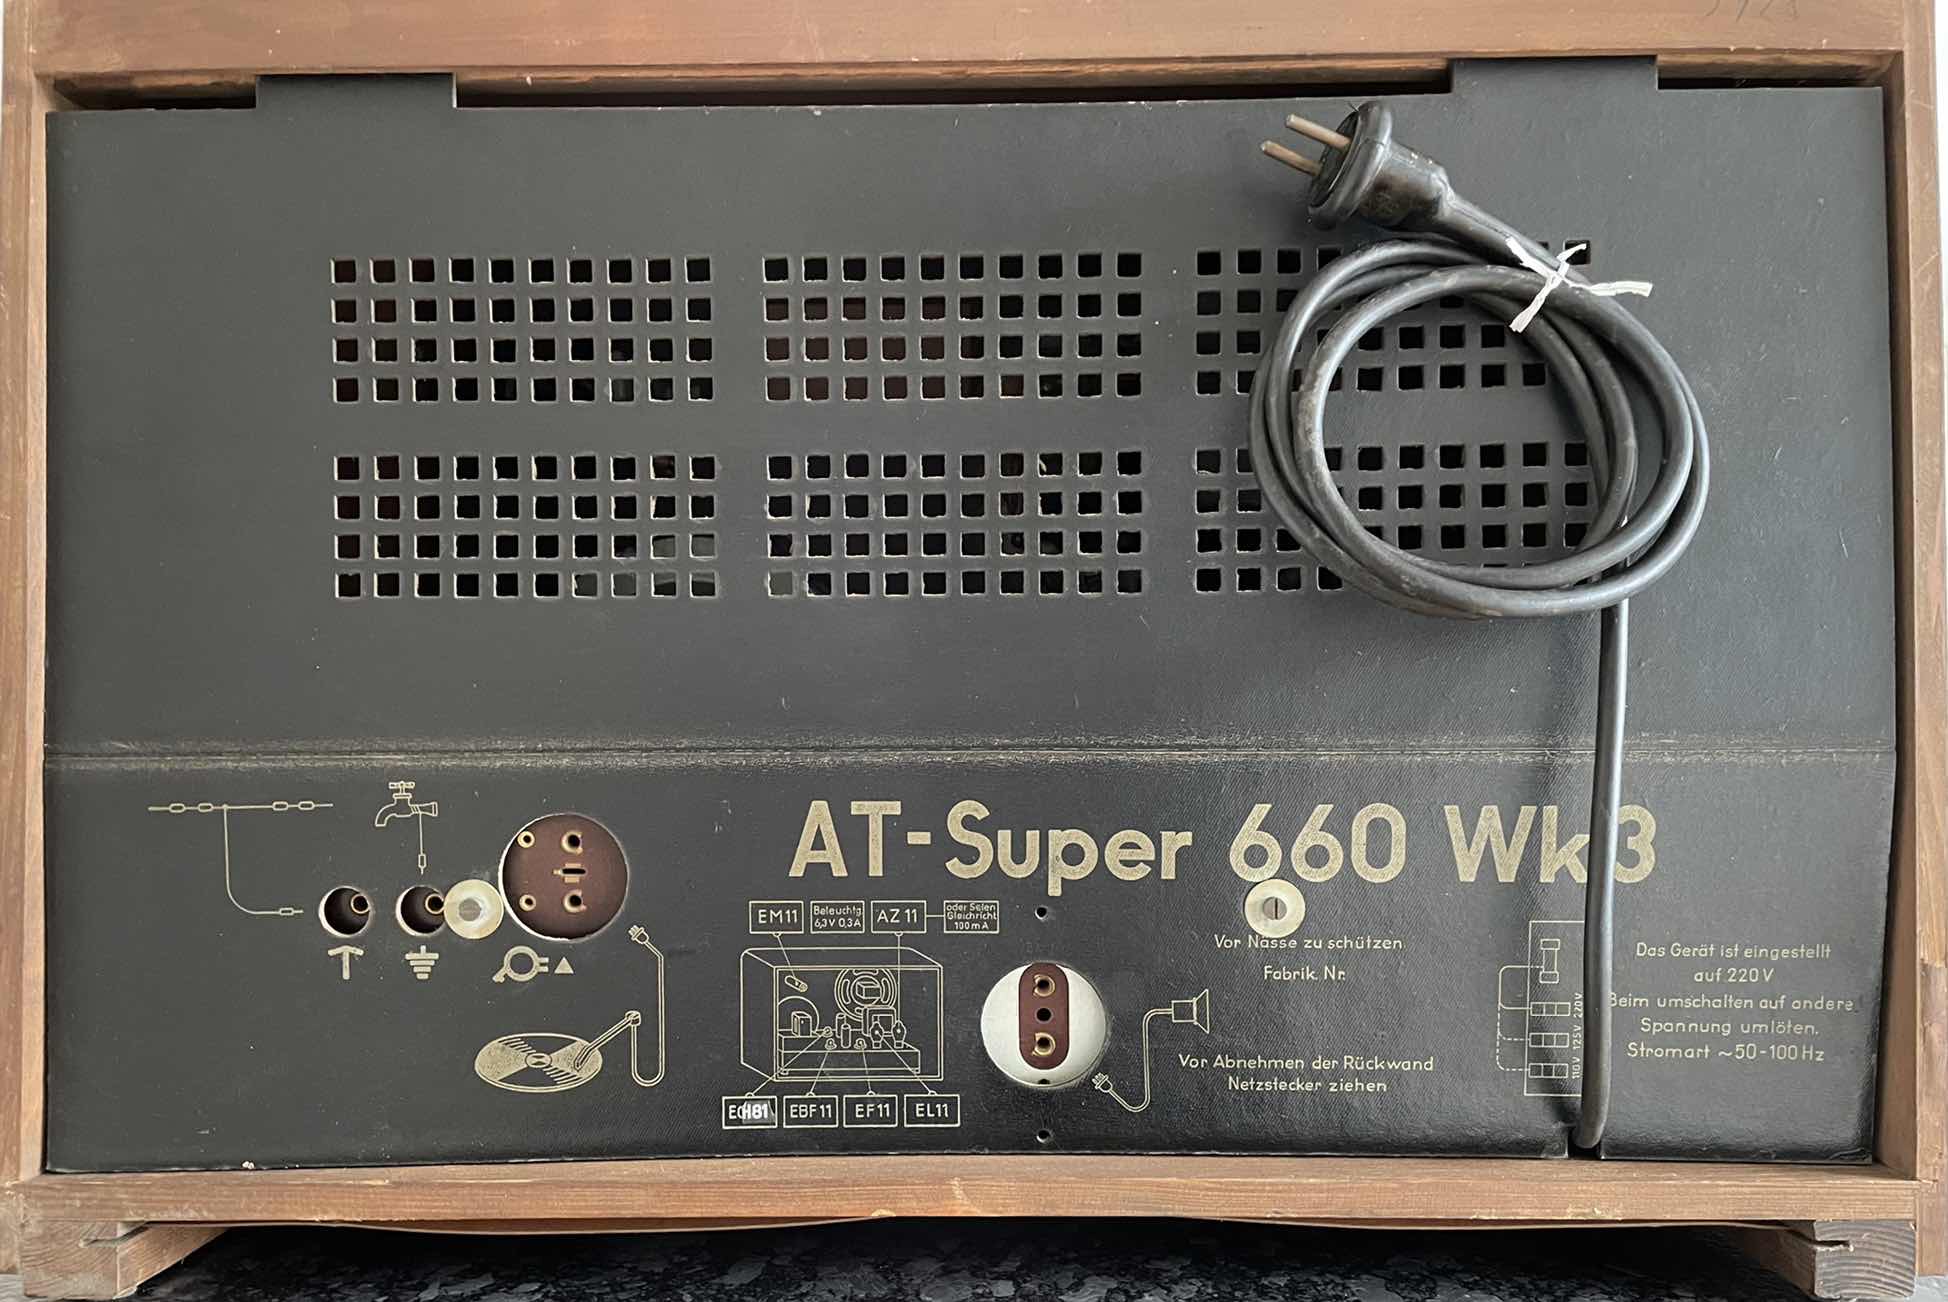 AT-Super 660Wk3